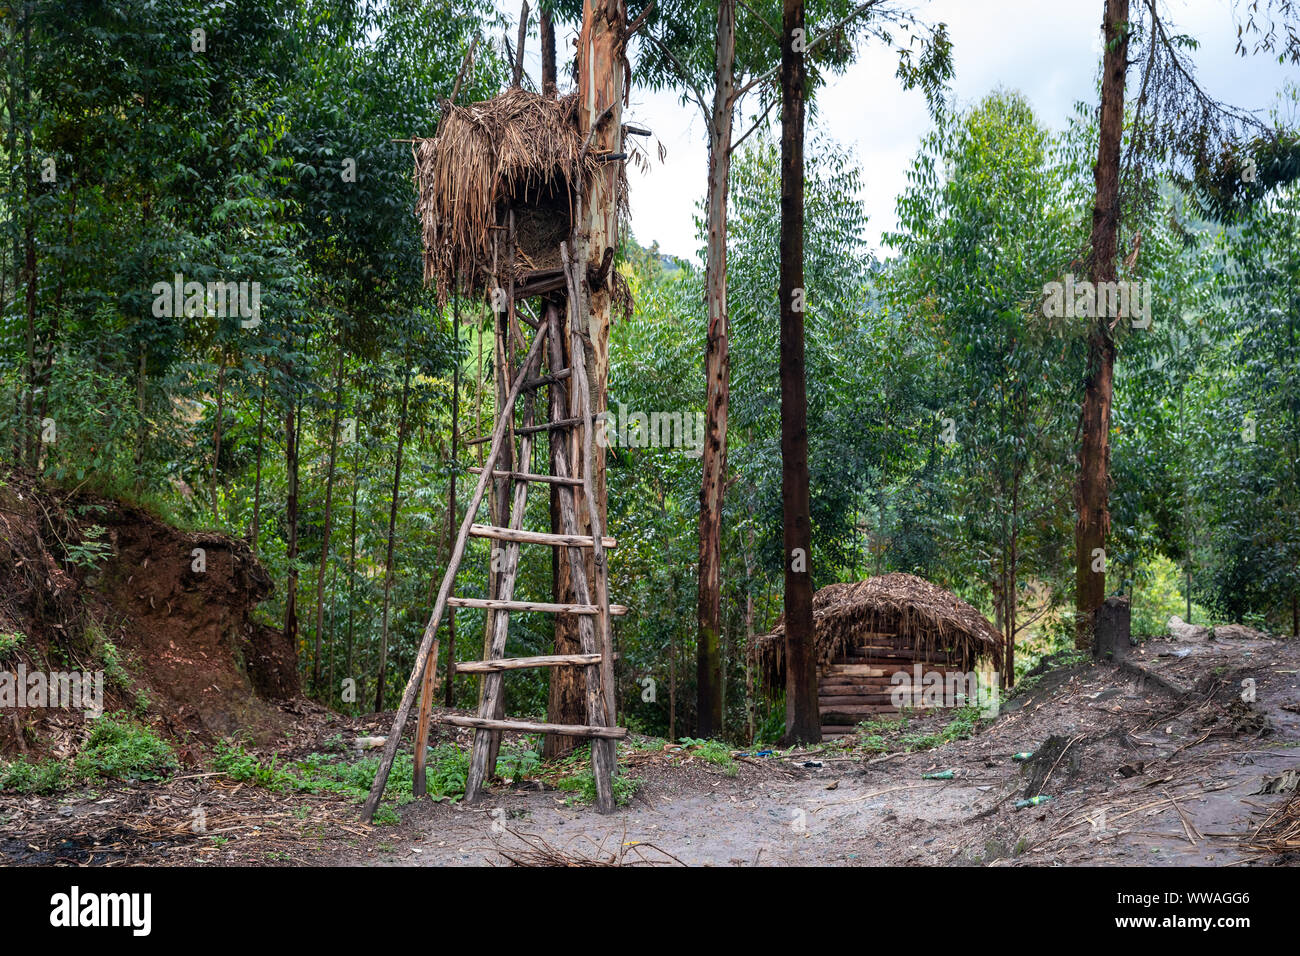 La tribu de pygmées Batwa village forestier, de l'Ouganda Banque D'Images